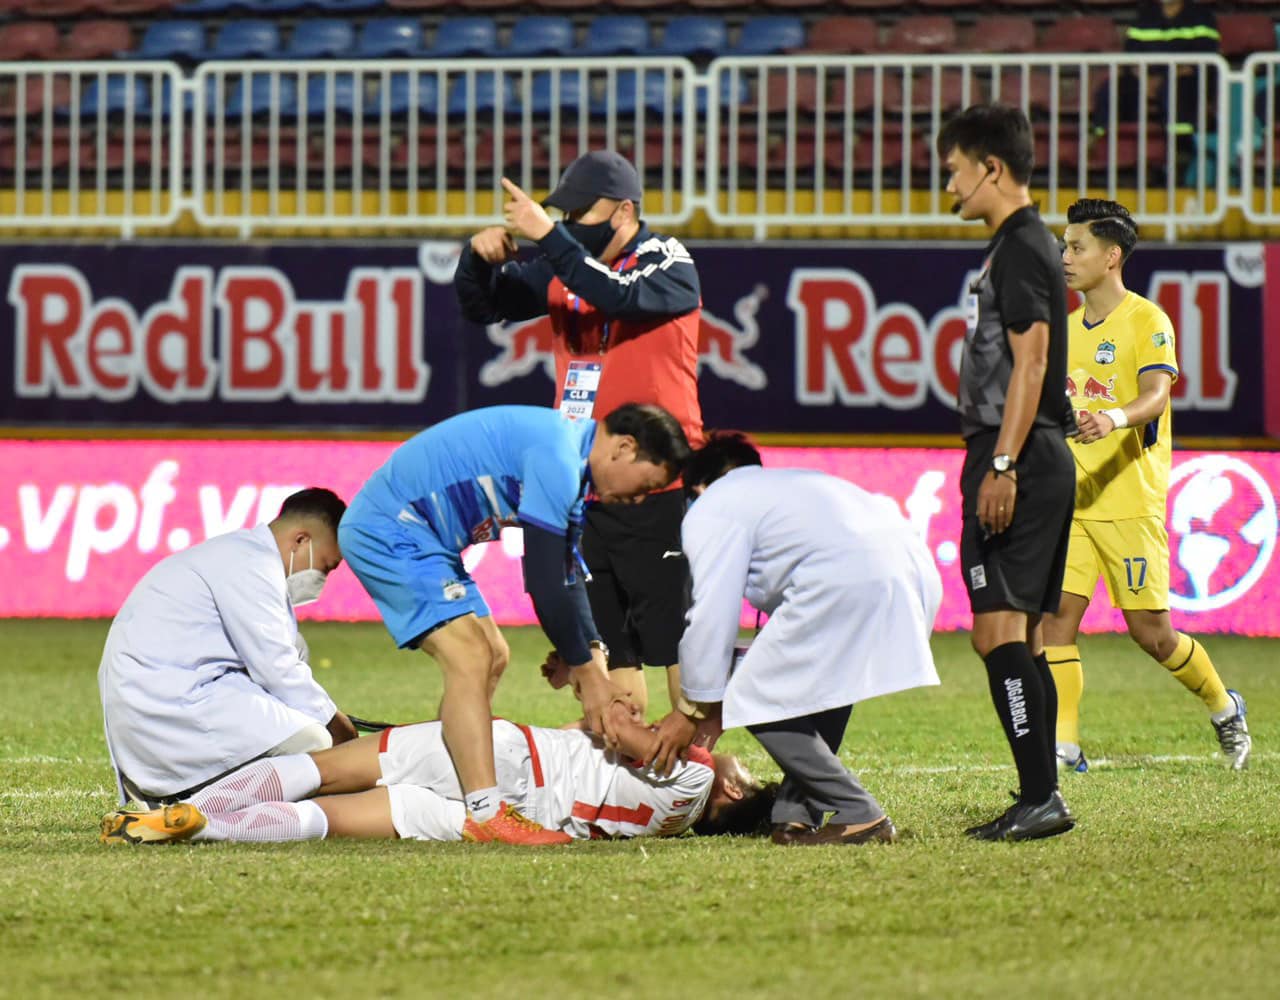 Cập nhật tình trạng chấn thương của Bùi Quang Khải sau trận đấu với HAGL - Ảnh 1.